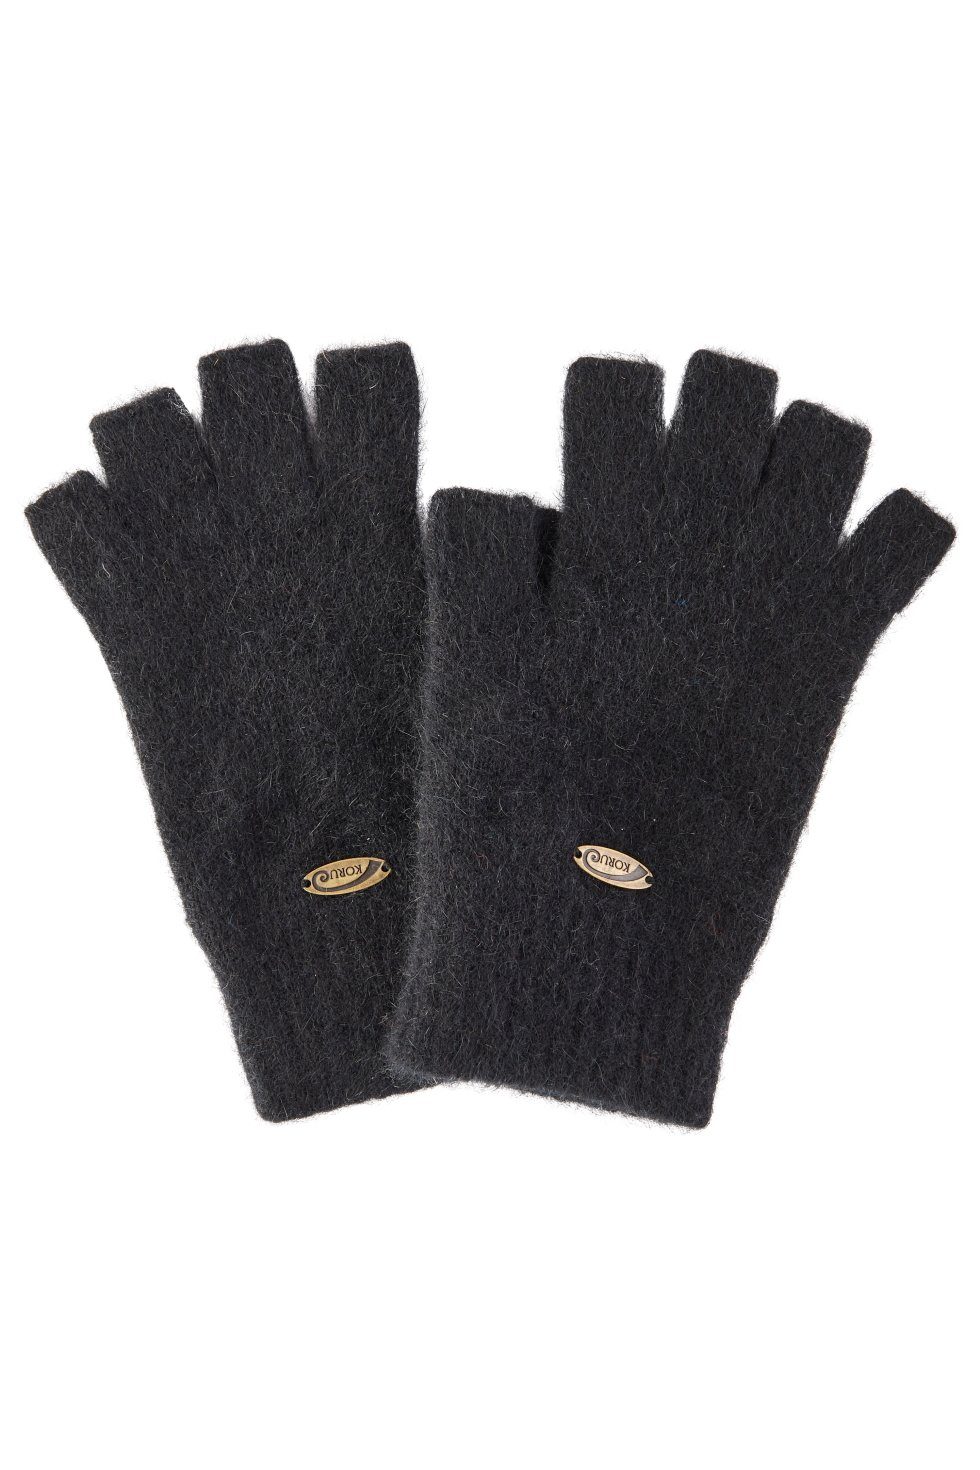 Koru Knitwear Strickhandschuhe Possum Merino Halbfinger Handschuhe aus der Possumhaarfaser braun